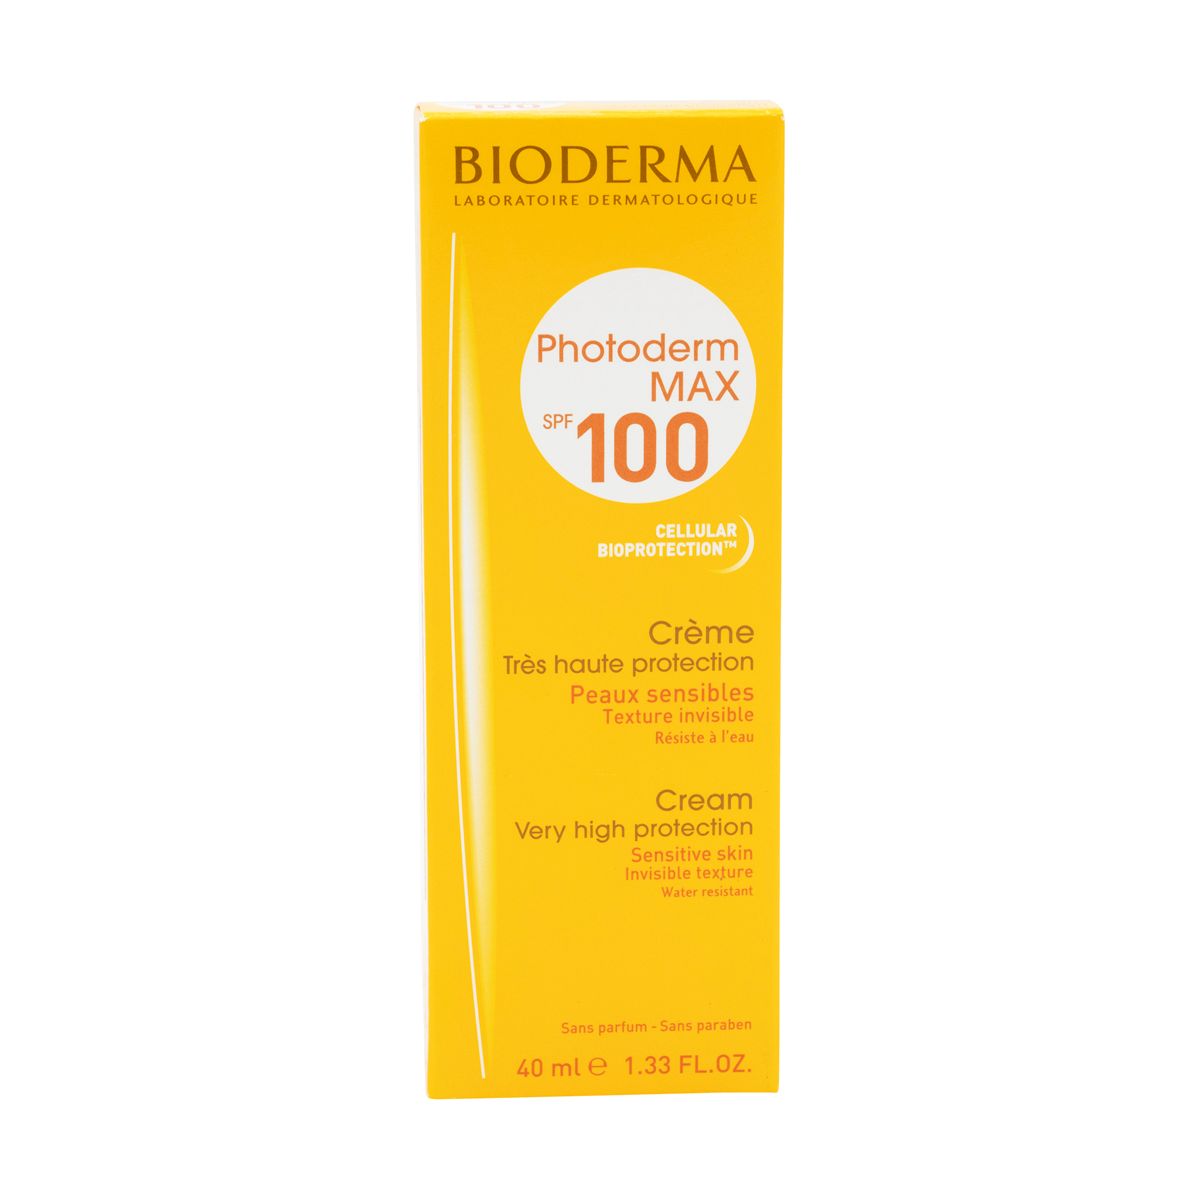 بيوديرما فوتوديرم ماكس كريم للوقاية من أشعة الشمس بعامل حماية ١٠٠ - ٤٠ مل